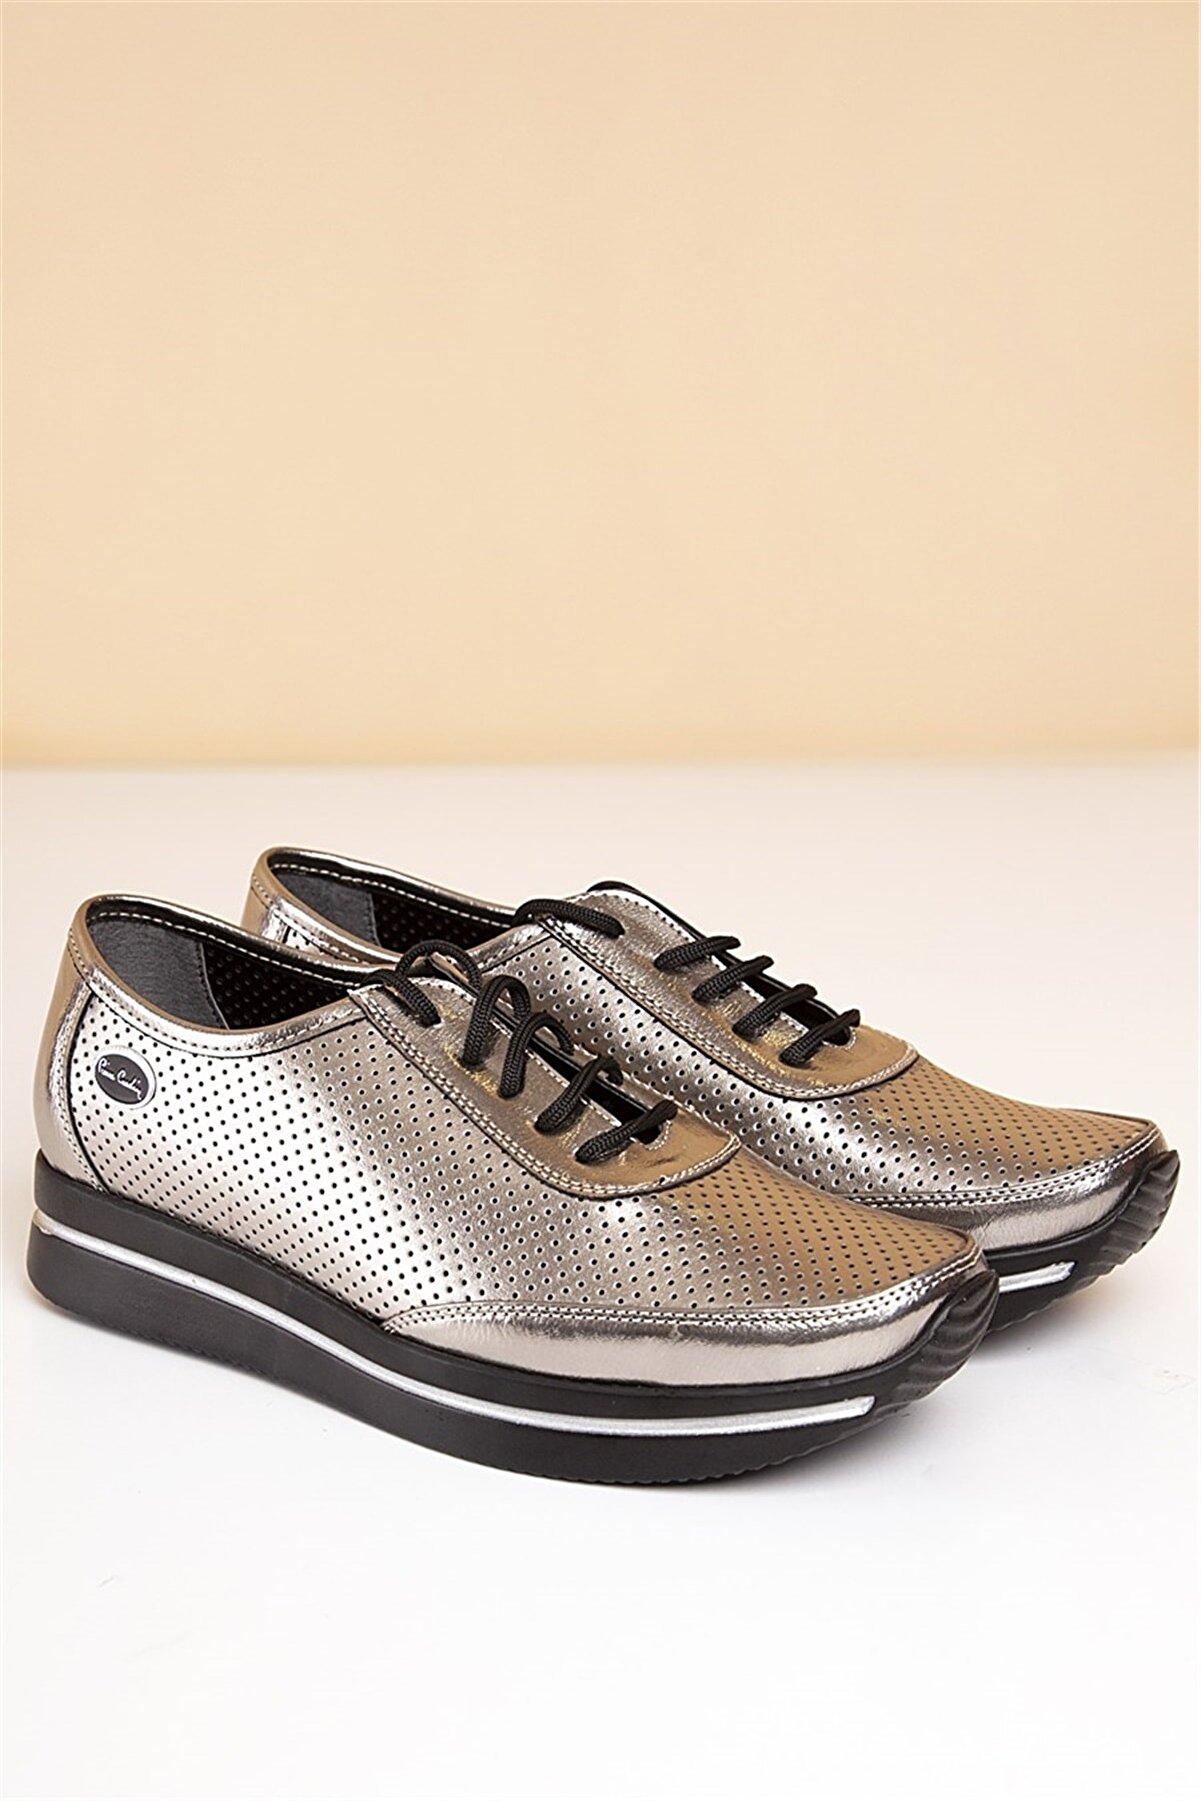 Pierre Cardin Pc-50100 Gümüş Kadın Ayakkabı